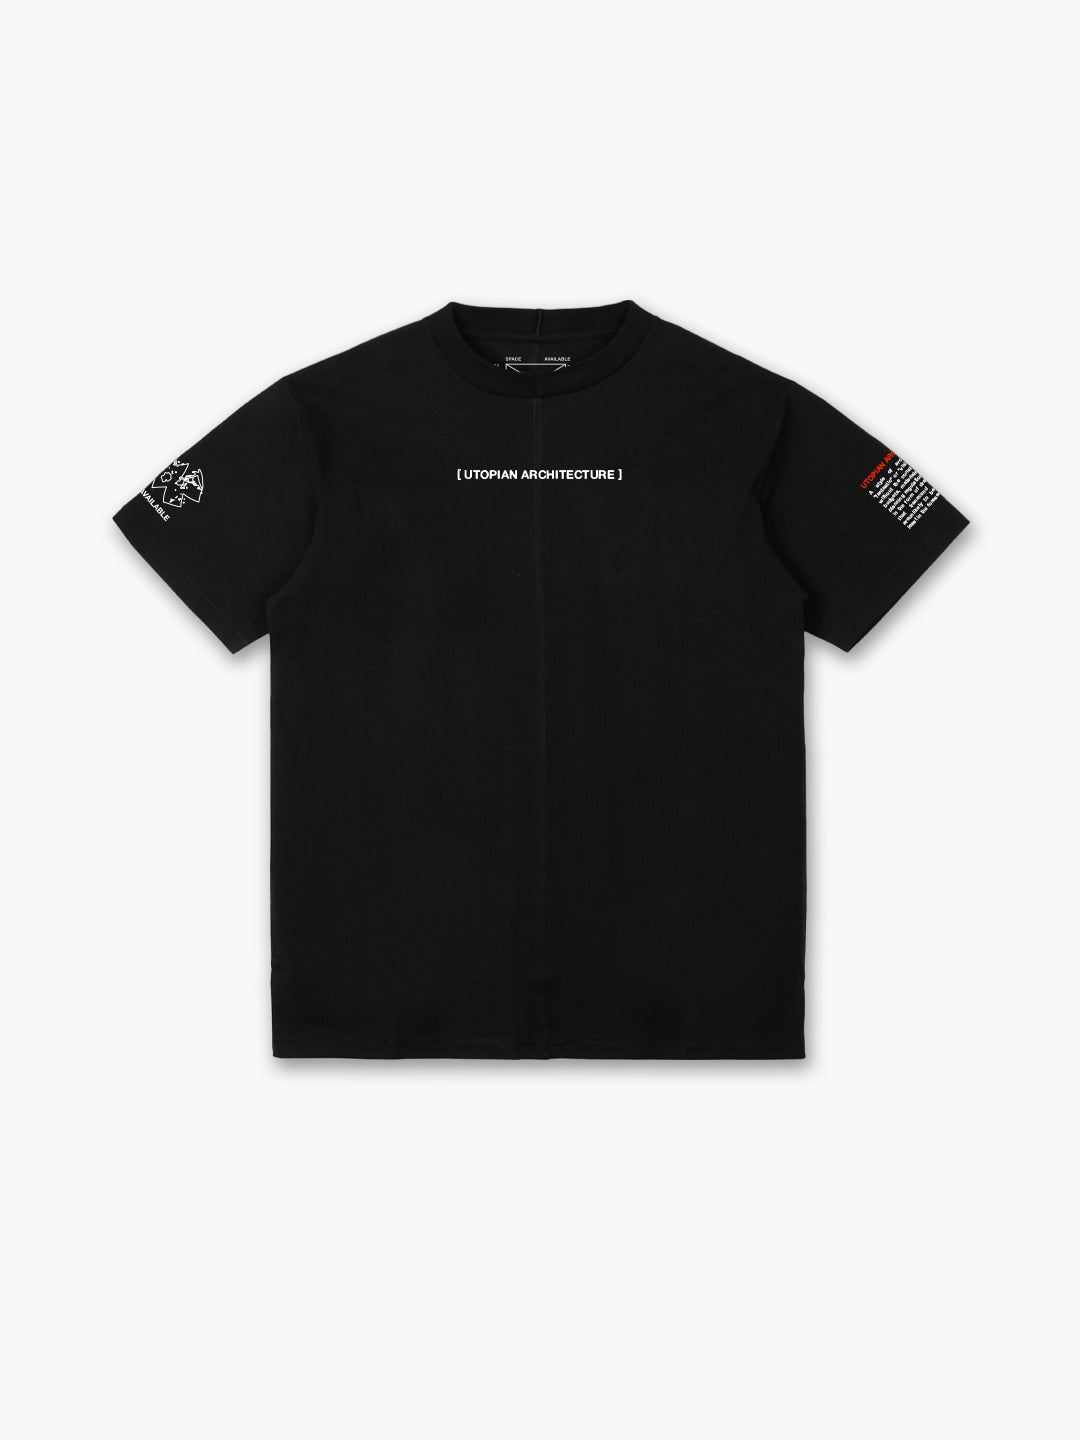 Future Living T-Shirt Black